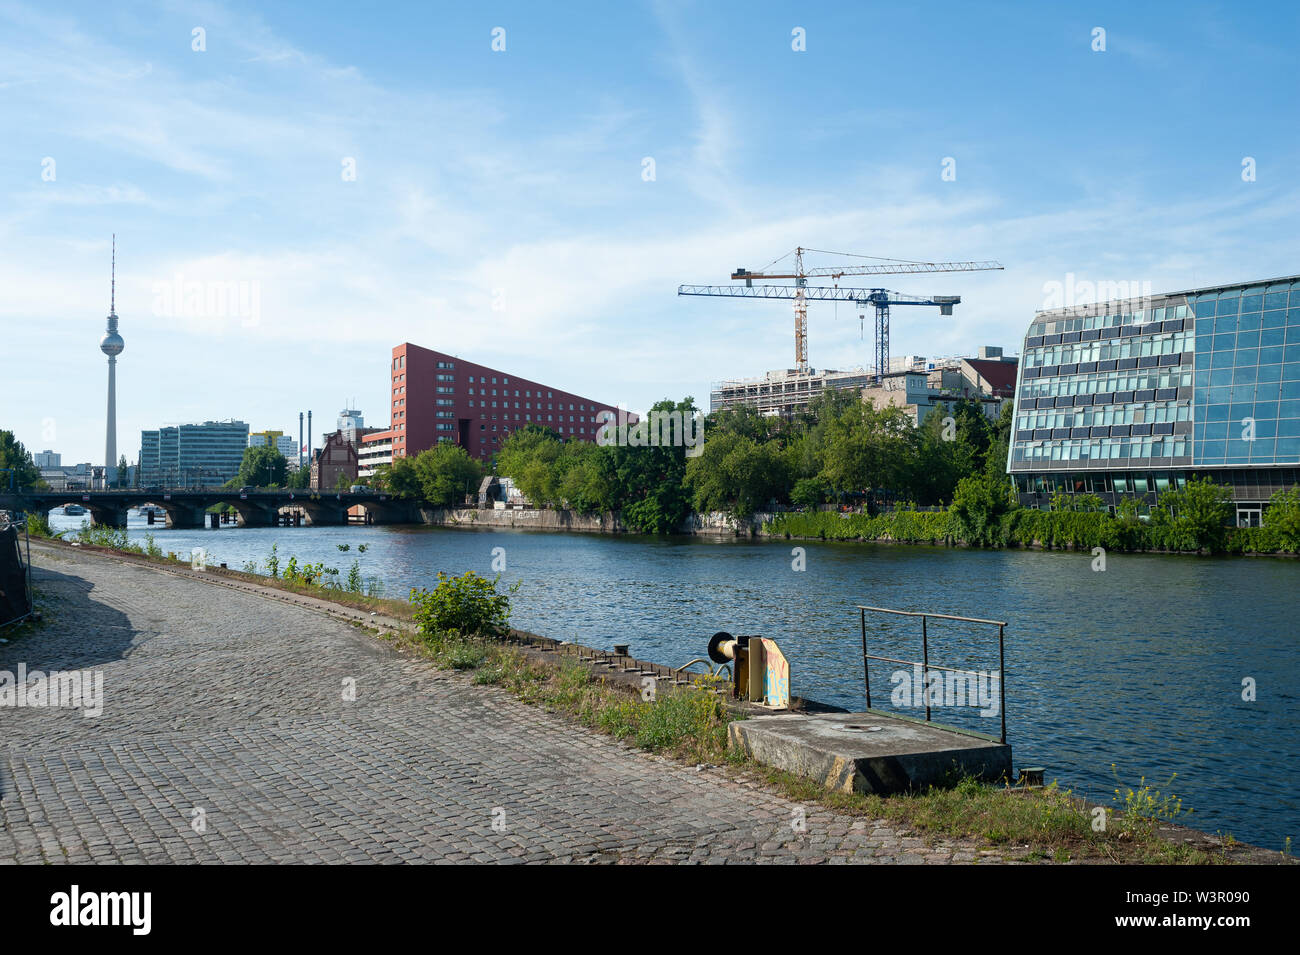 24.06.2019, Berlin, Allemagne, Europe - voir de nouveaux bâtiments sur les rives de la rivière Spree dans le quartier de Friedrichshain-Kreuzberg. Banque D'Images